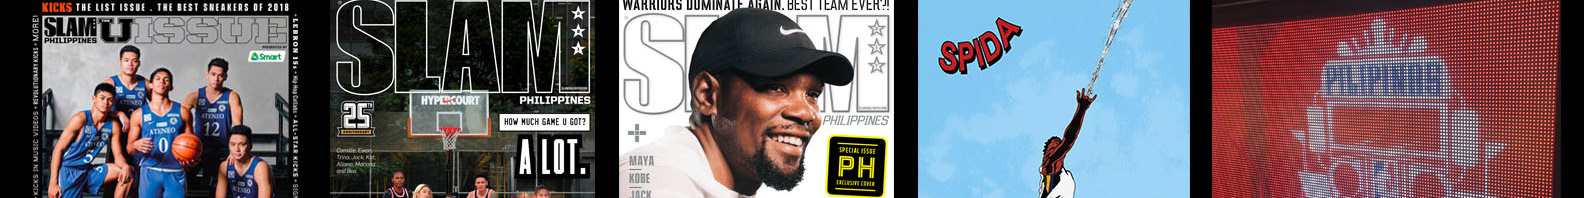 Dennis Eusebio Jr.'s profile banner